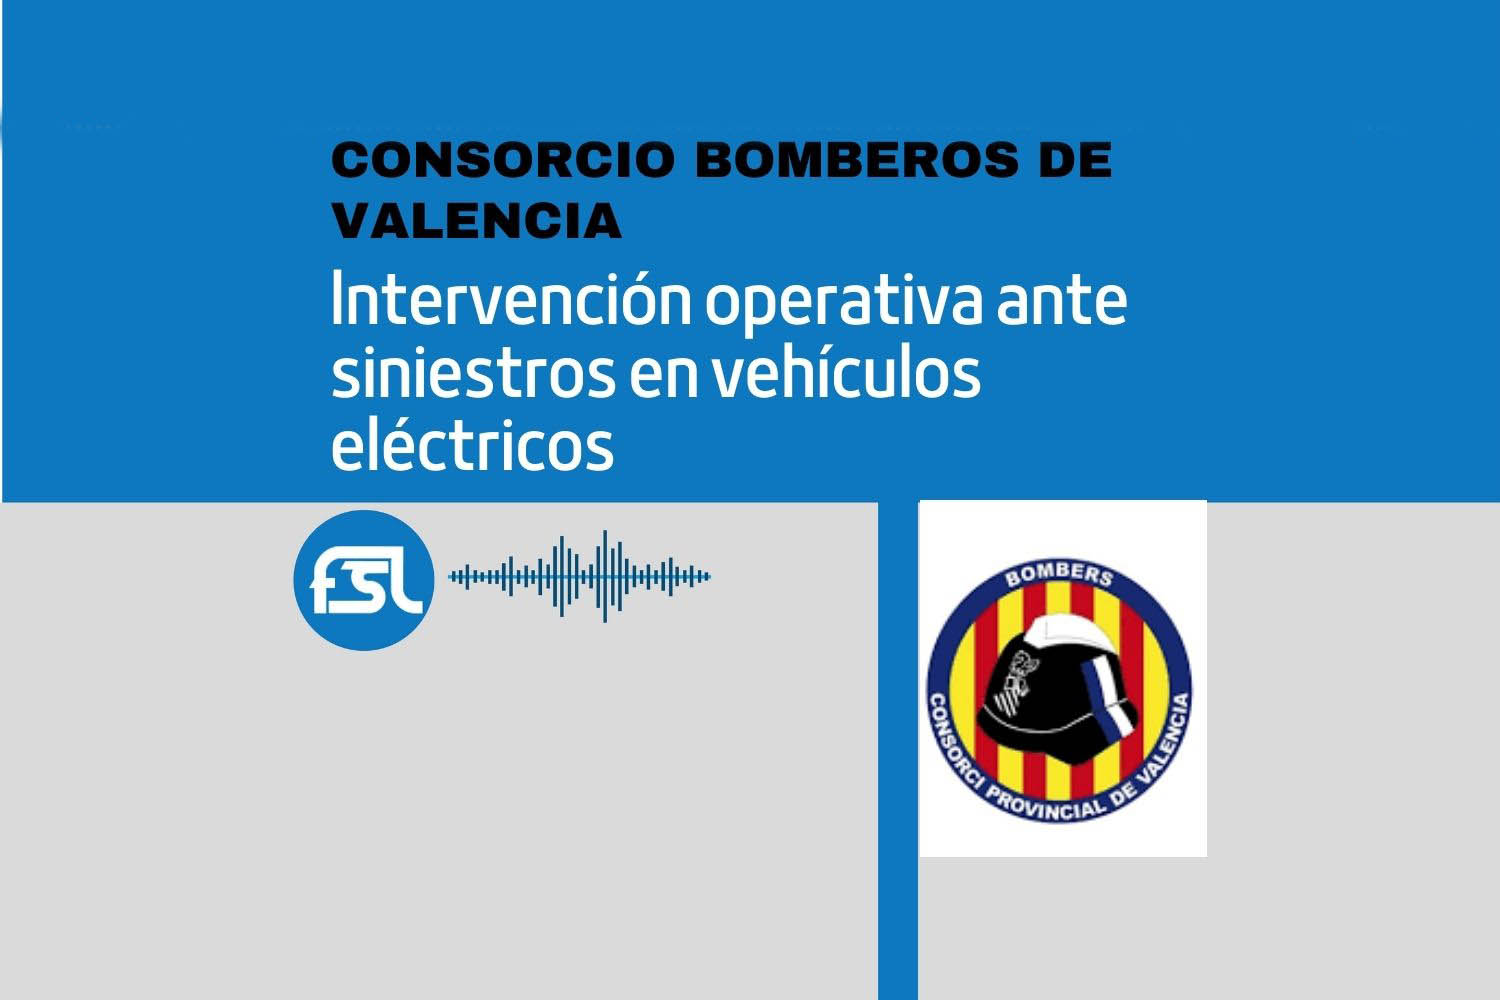 José Antonio Ortiz Linares (Consorcio Bomberos de Valencia): intervención operativa ante siniestros en vehículos eléctricos